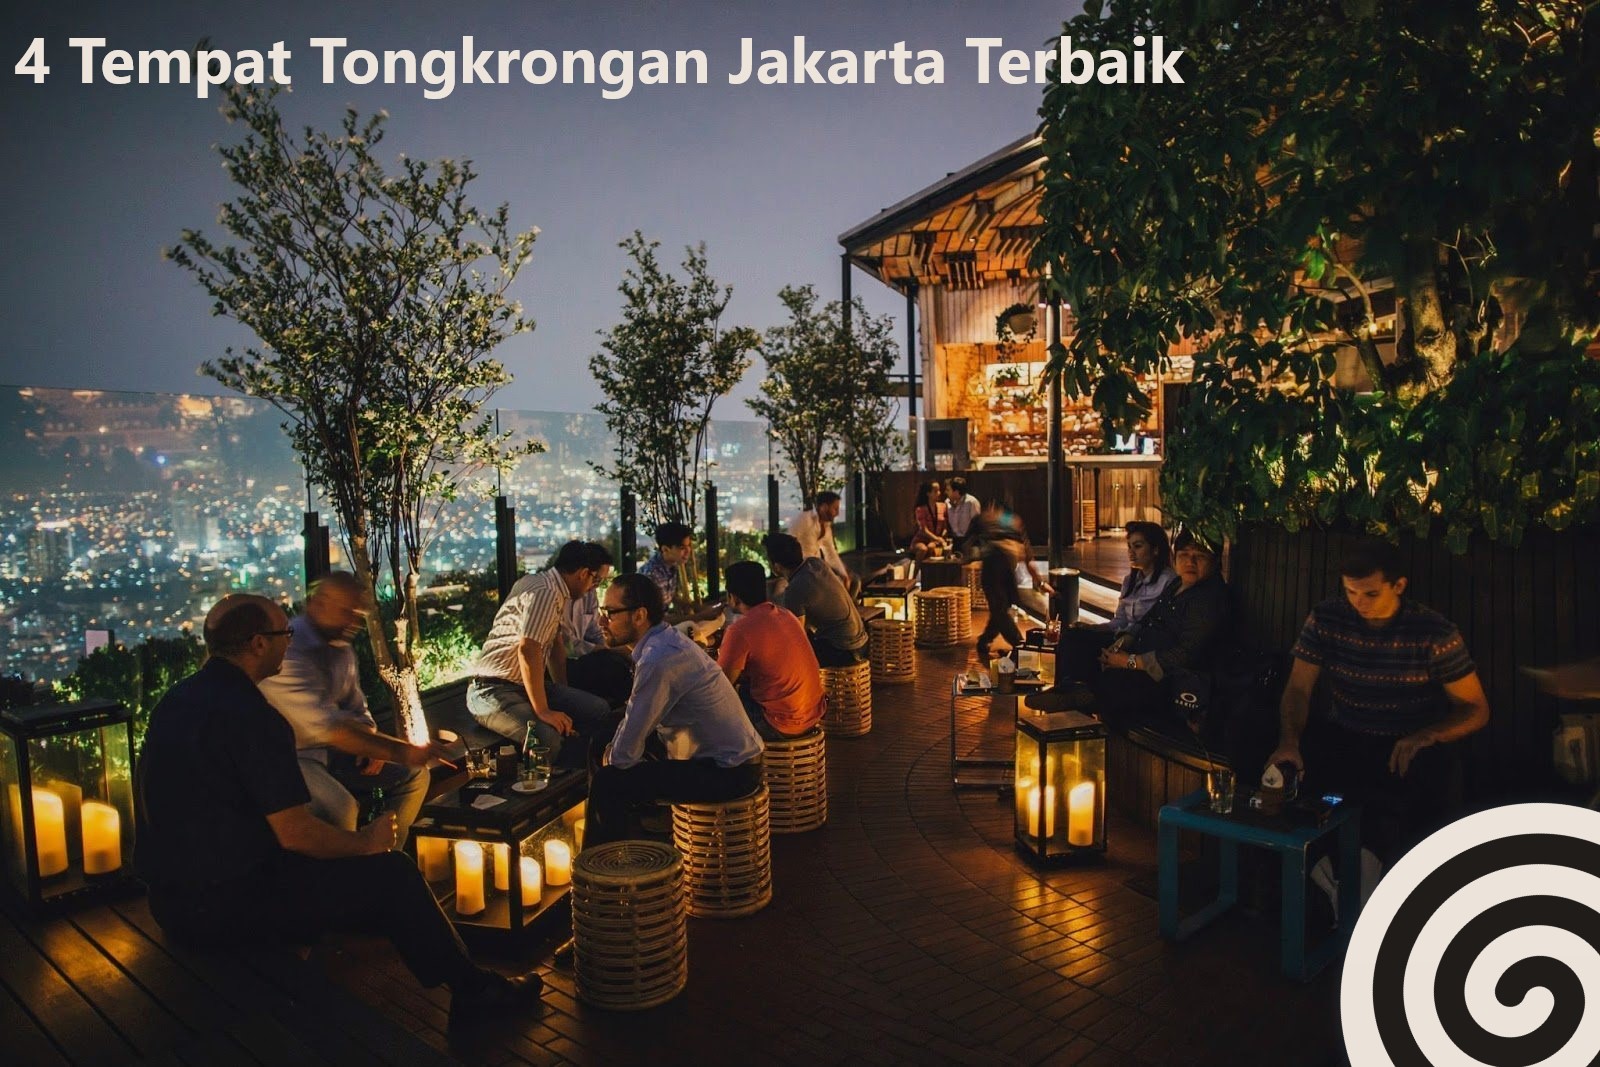 4 Tempat Tongkrongan Jakarta Terbaik post thumbnail image